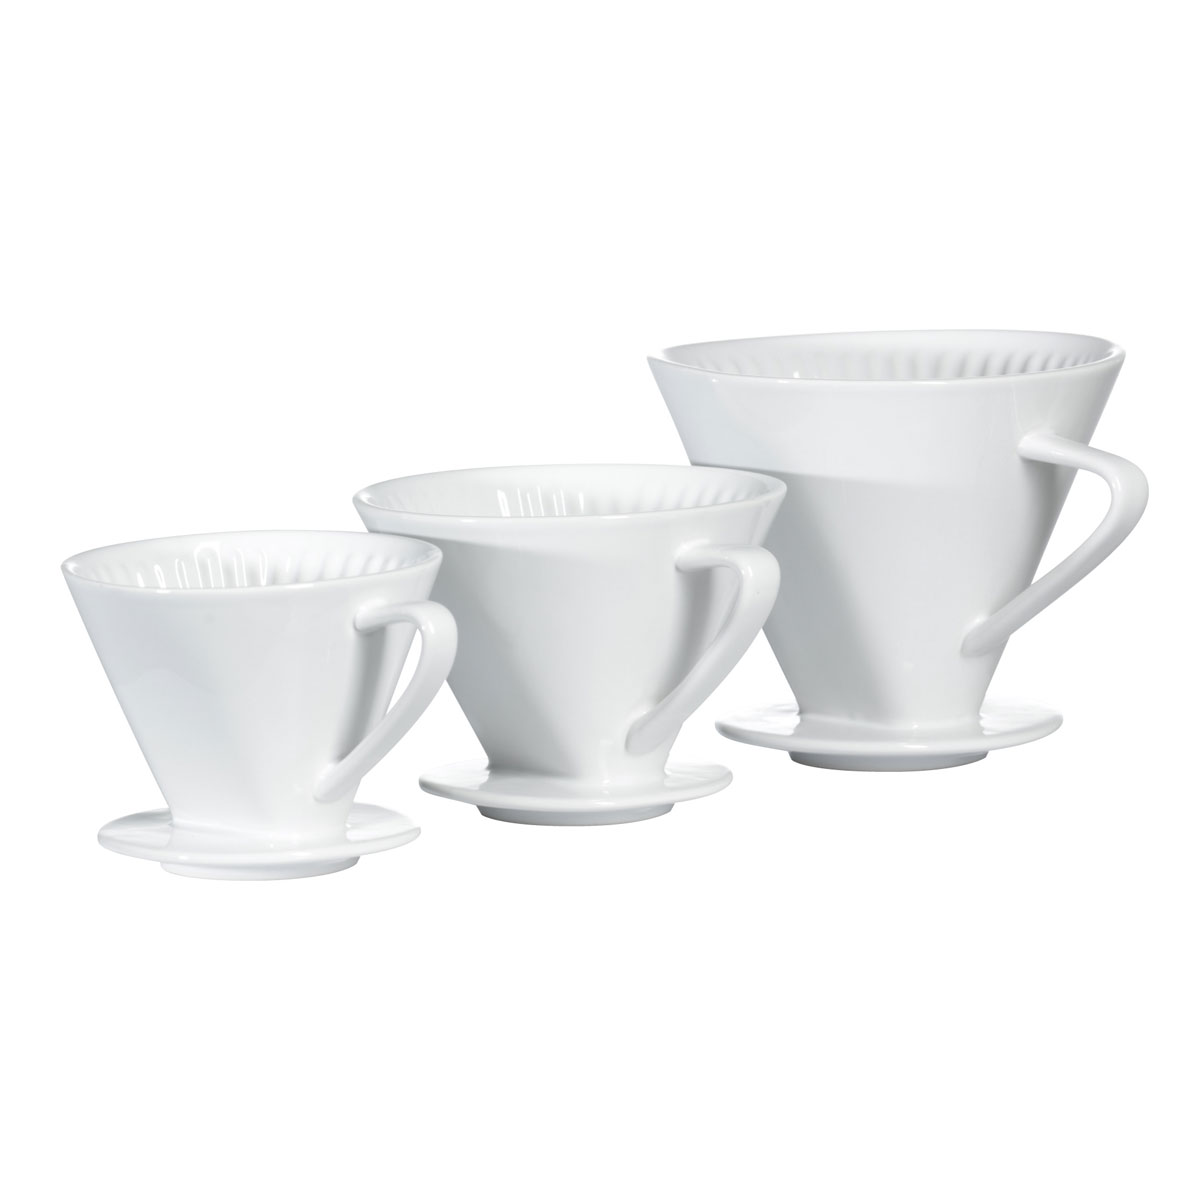 Porcelain Filter Holders - Frieling